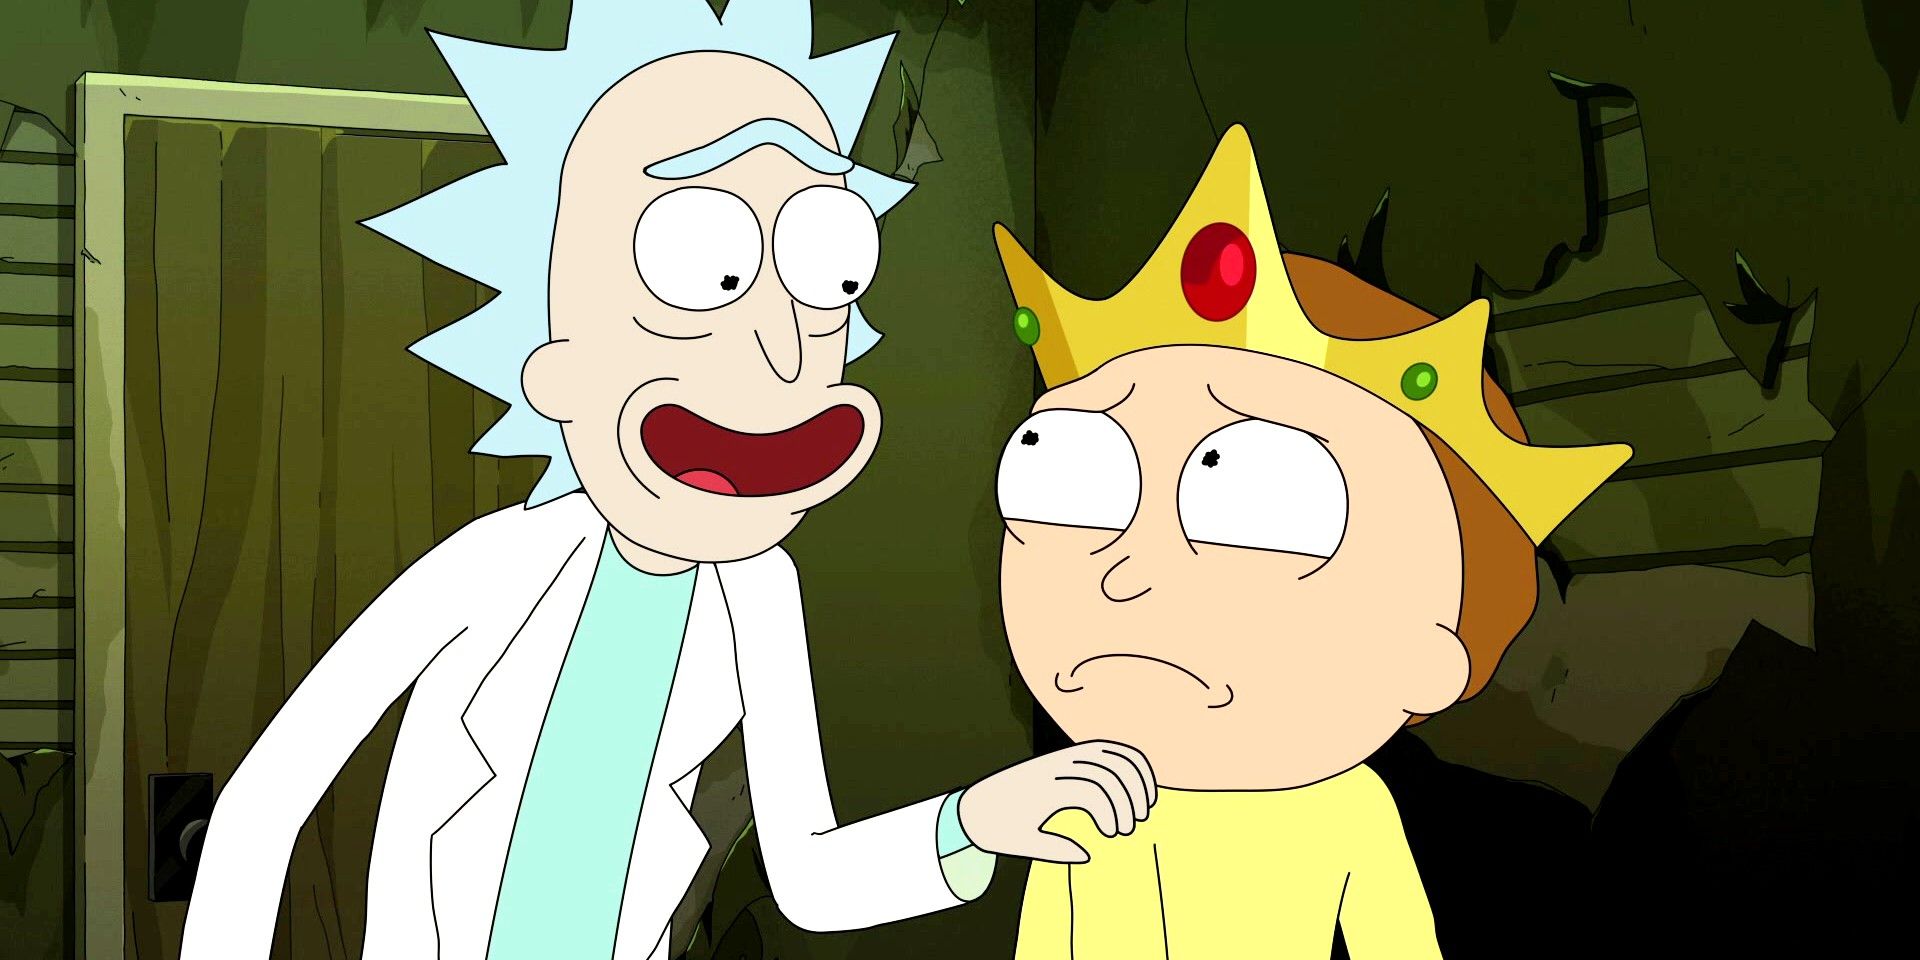 La temporada 7 de Rick & Morty podría ser "aún mejor" sin Justin Roiland, dice el productor